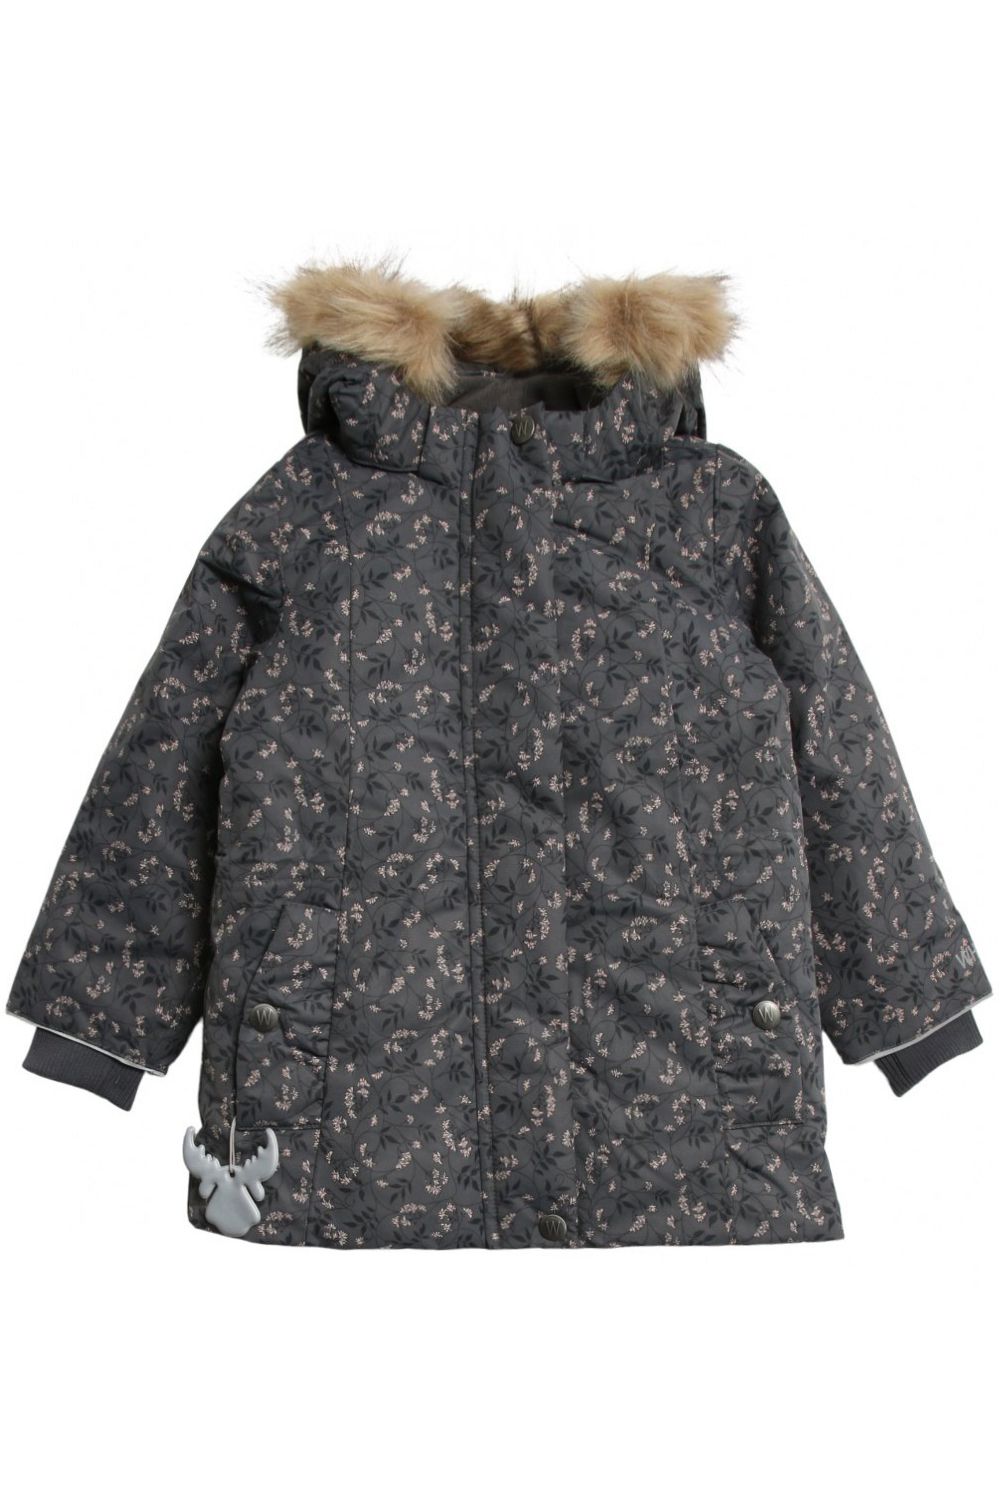 Куртка Wheat outerwear, размер 110, цвет серый - фото 1